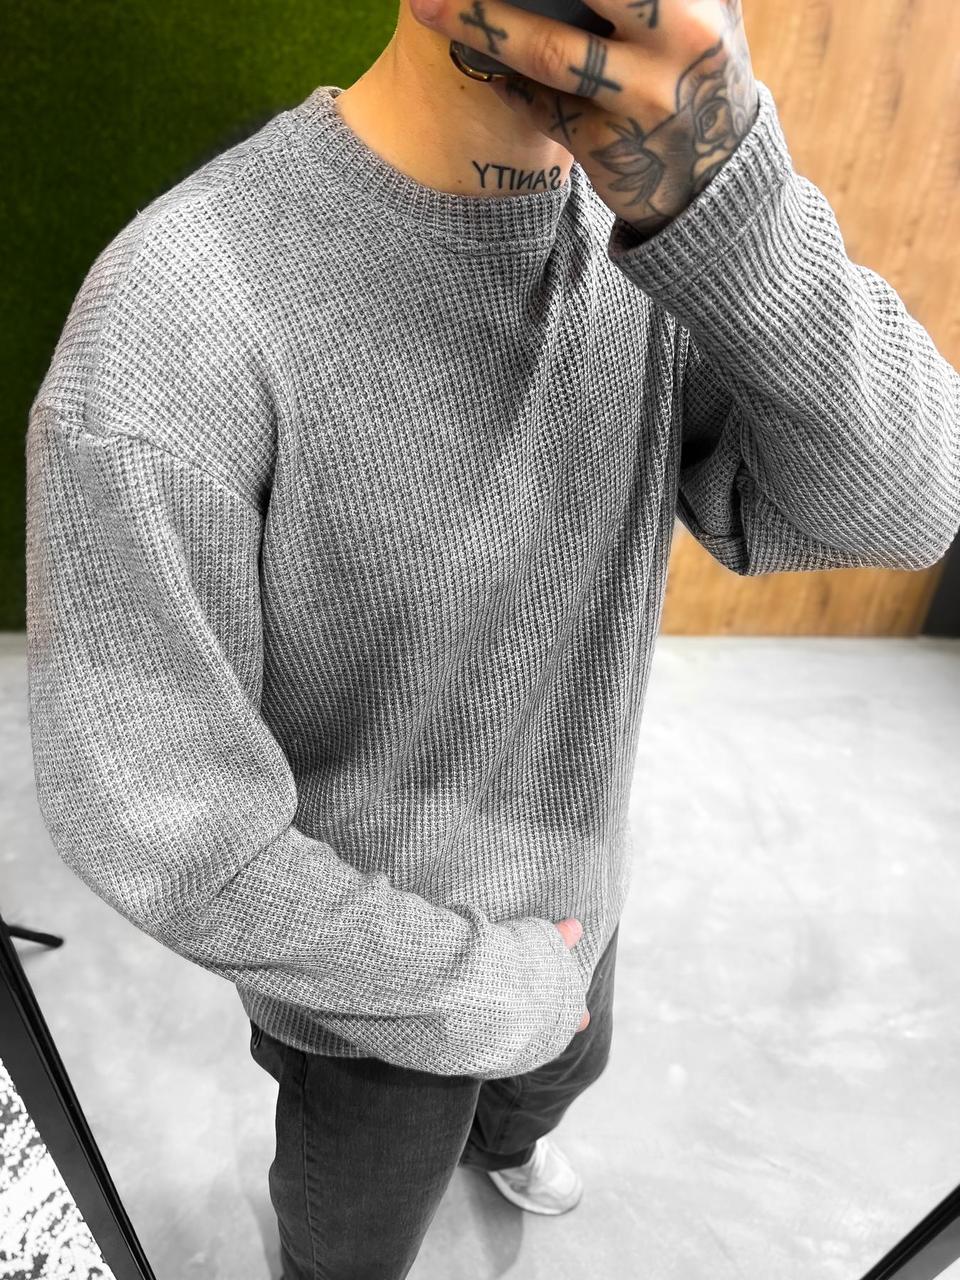 Теплий джемпер светр чоловічий з горлом повсякденний сірого кольору | Якісні чоловічі кофти зима-весна-осінь